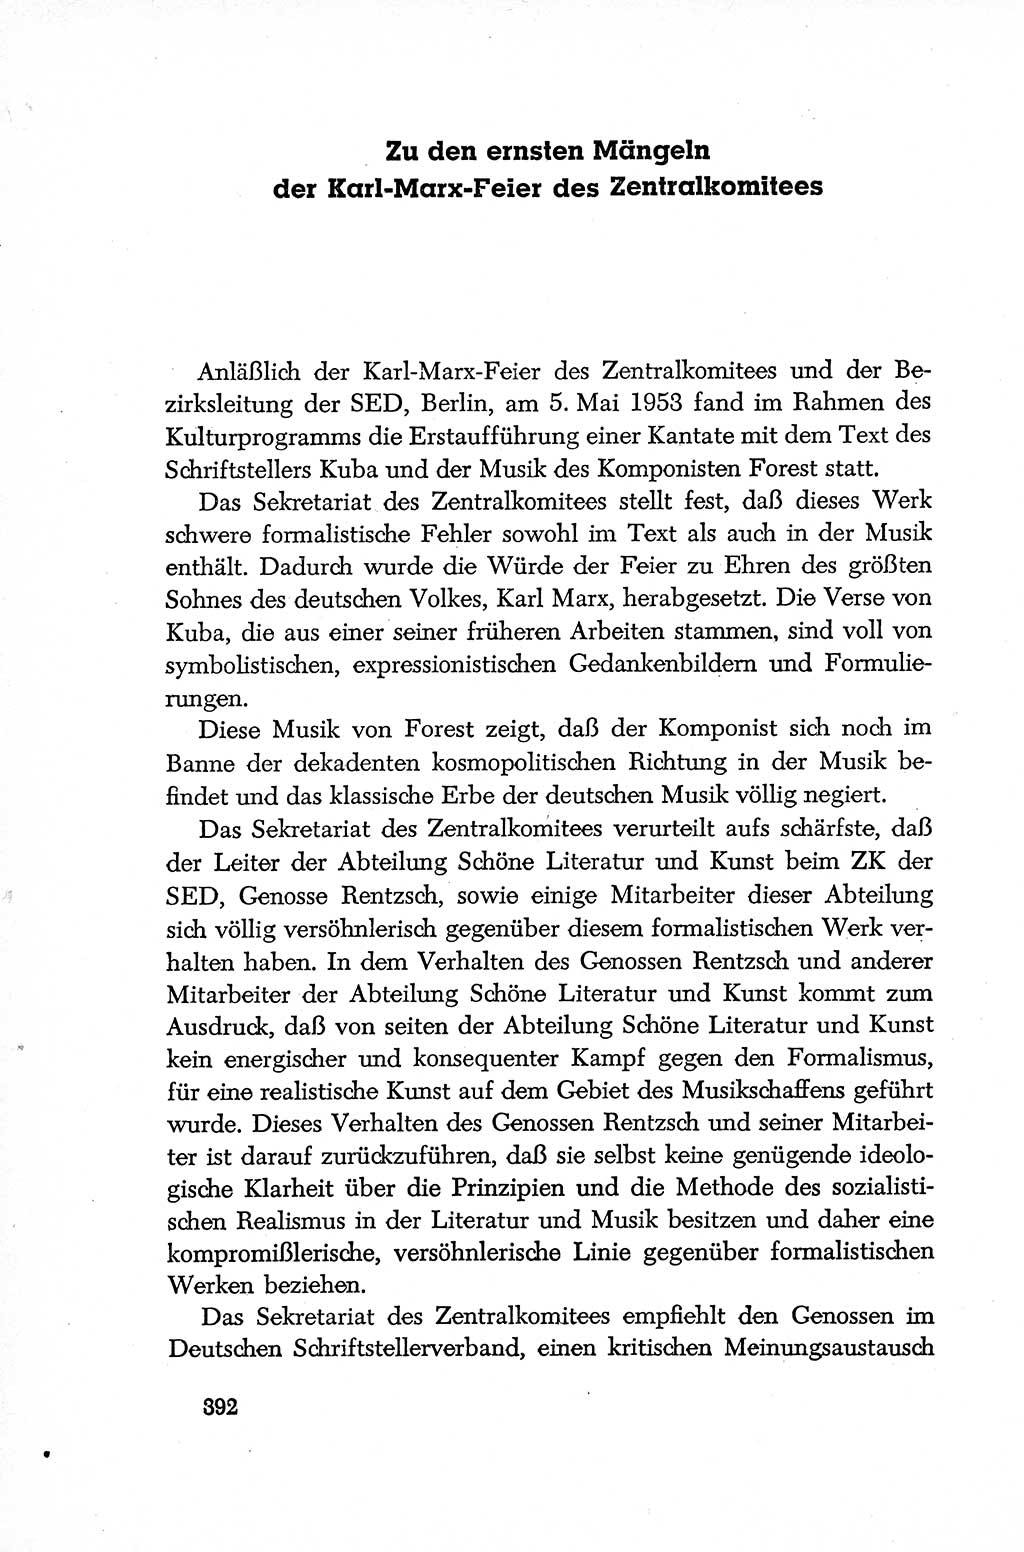 Dokumente der Sozialistischen Einheitspartei Deutschlands (SED) [Deutsche Demokratische Republik (DDR)] 1952-1953, Seite 392 (Dok. SED DDR 1952-1953, S. 392)